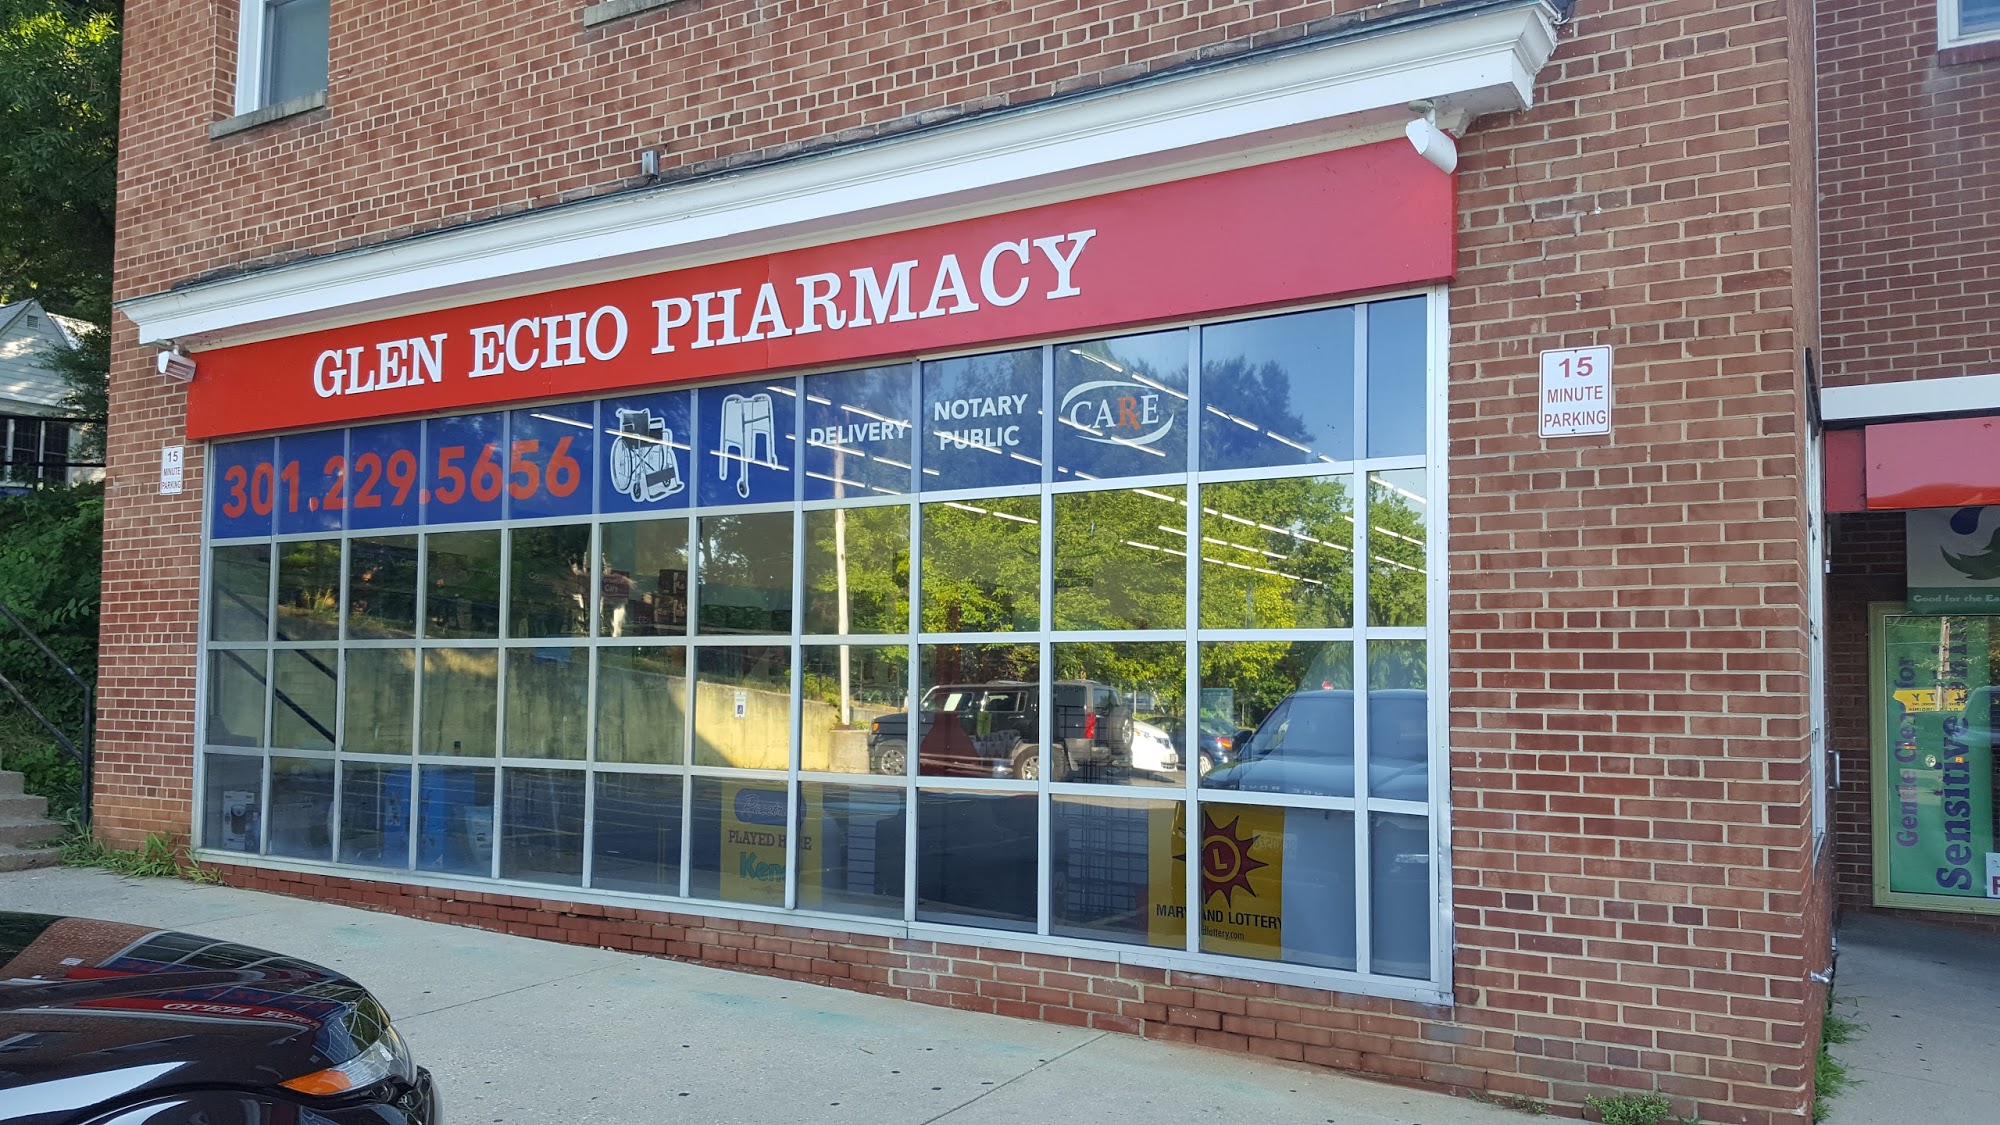 Glen Echo Pharmacy